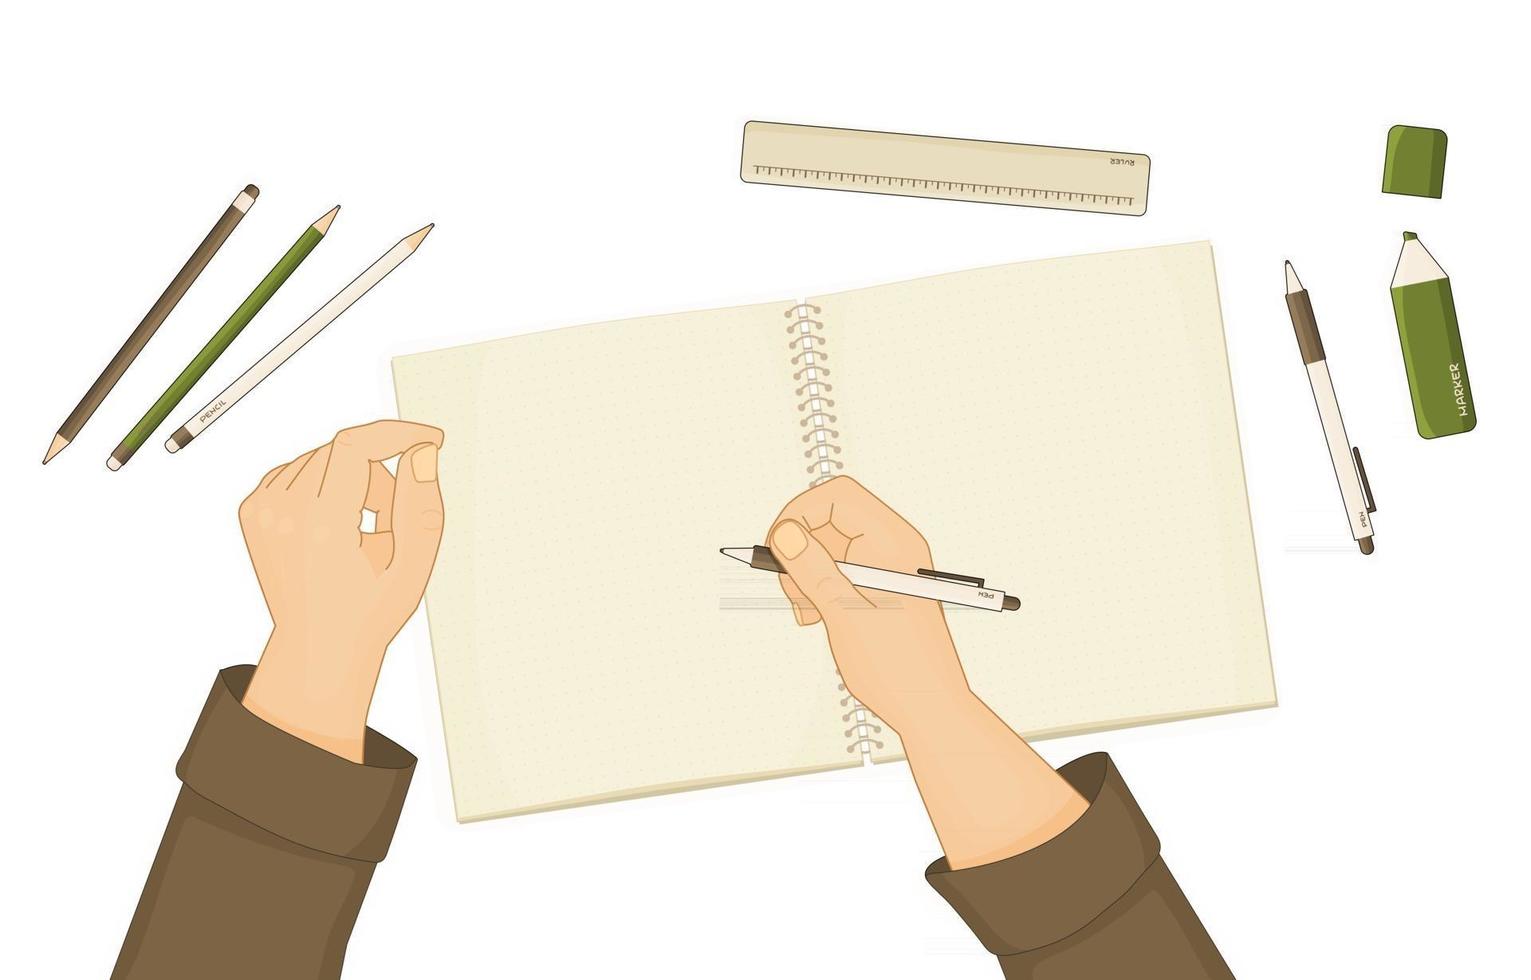 Schulheft oder Notizbuch für zusammenfassende Notizen Stift Bleistiftmarker Lineal sind auf dem Tisch Mensch beginnt etwas zu schreiben Hände werden gezeigt weißer Stift ist in der rechten Hand Elemente sind isoliert auf weißem Hintergrund vektor